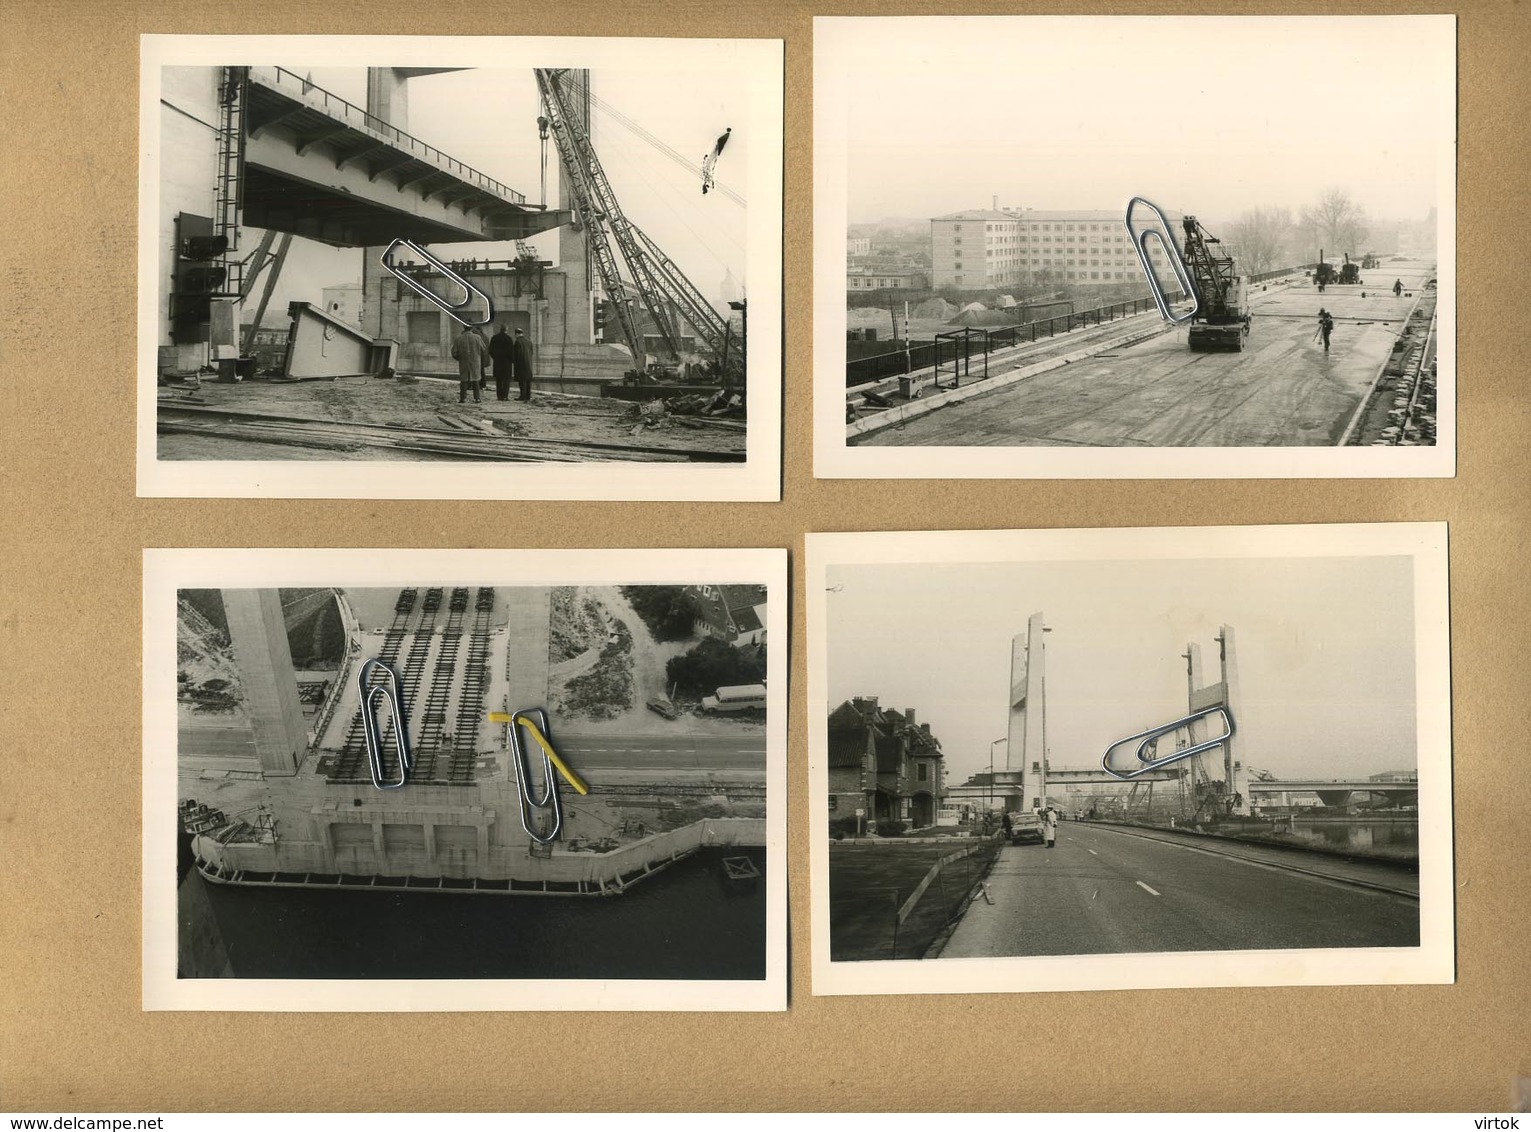 Vilvoorde - Vilvorde : 27 foto's (12.5 x 9 cm  :  september 1971 + knipsel   ) de nieuwe brug - le nouveau pont